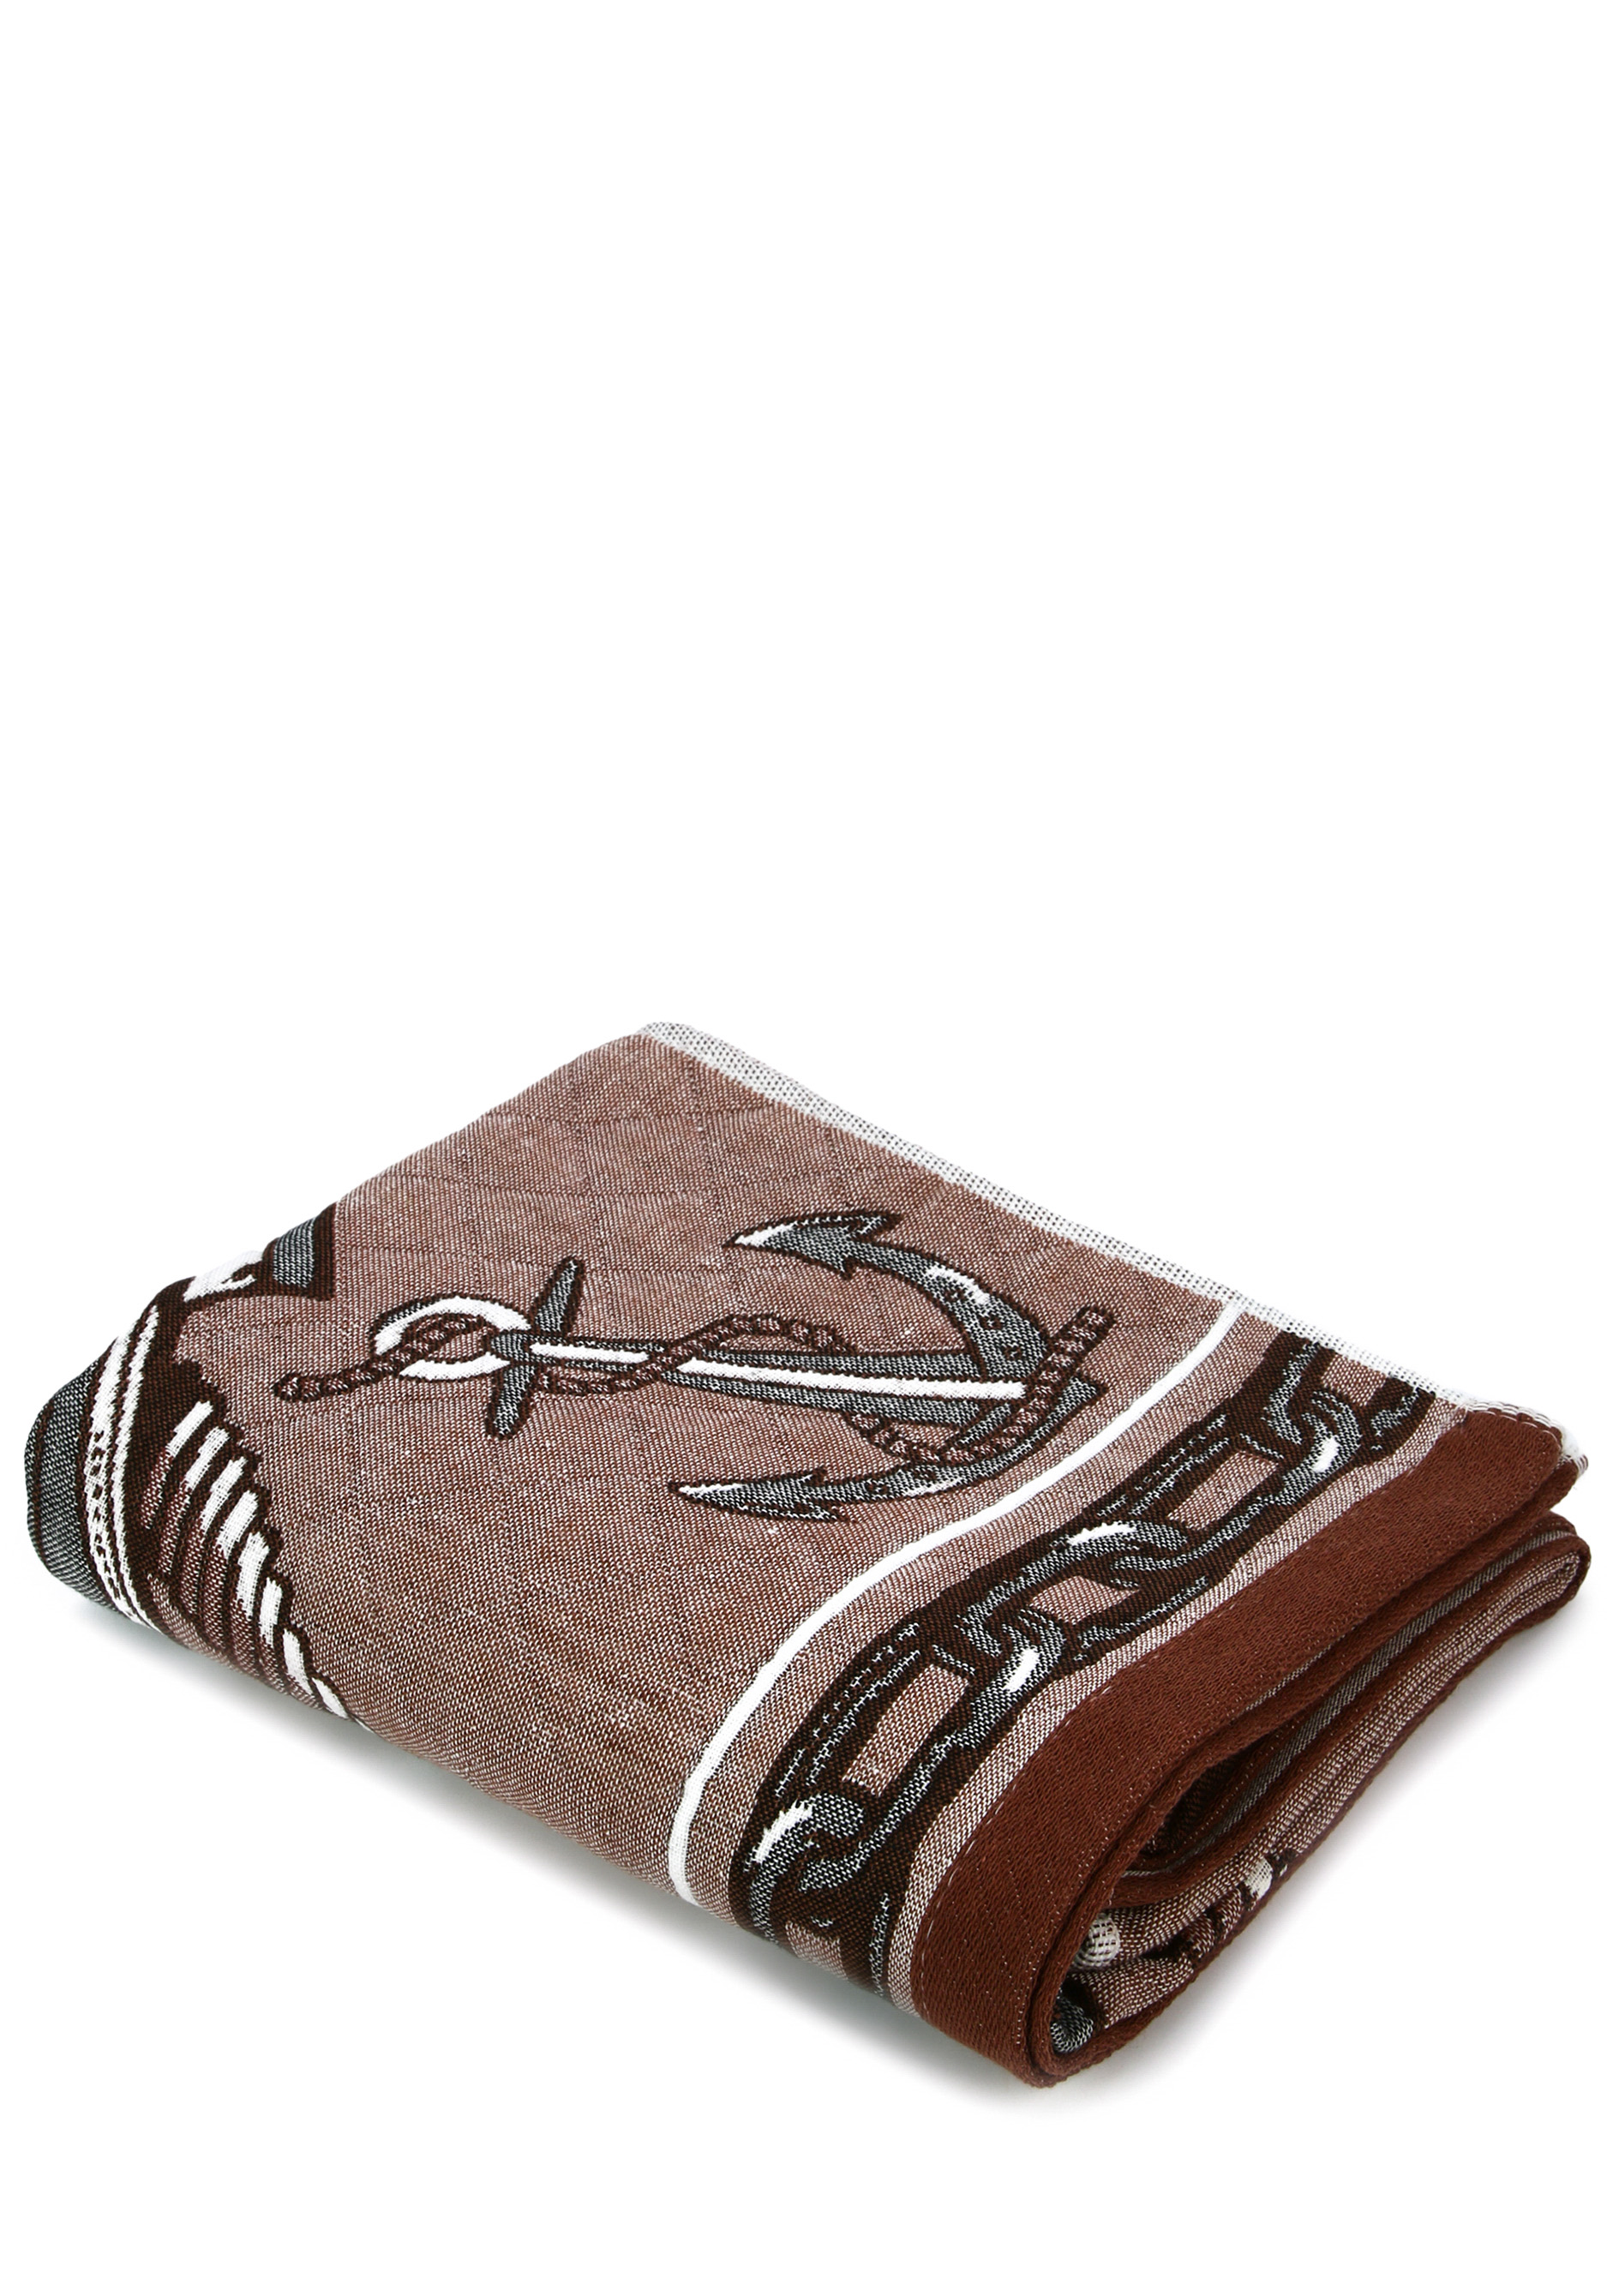 Полотенце стеганое "Реванш", 55*100 см, цвет коричневый, размер 55*100 - фото 1